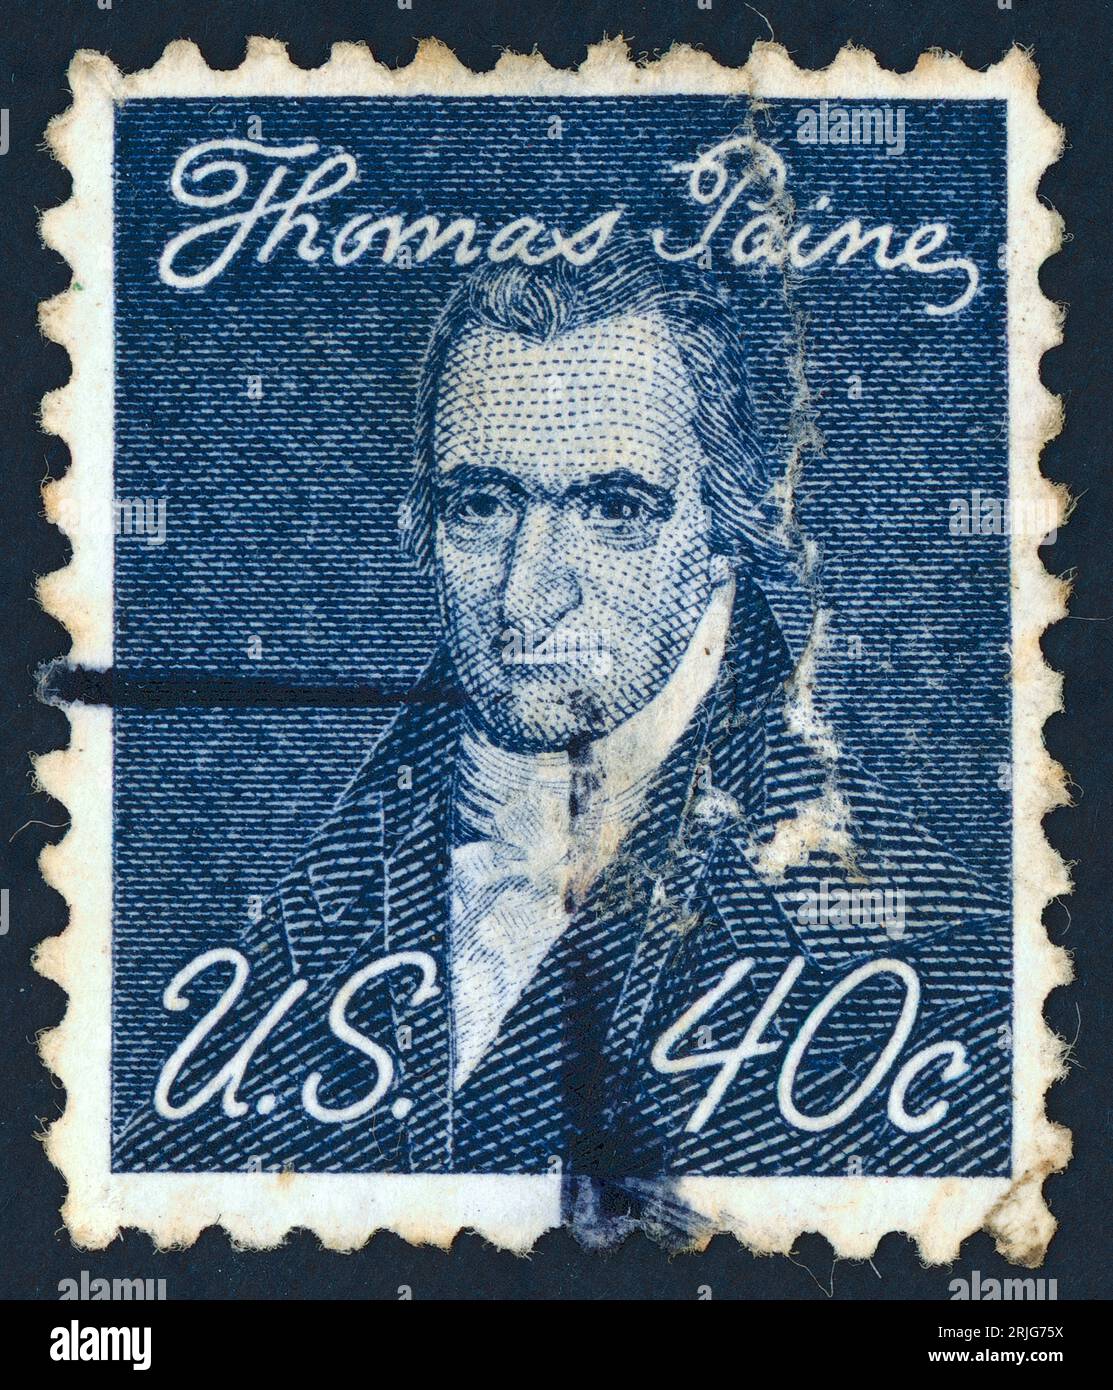 Thomas Paine (nato Thomas Pain; 1737 – 1809). Francobollo emesso negli Stati Uniti nel 1968. Thomas Paine era un padre fondatore americano nato in Inghilterra, attivista politico, filosofo, teorico politico e rivoluzionario. Fu autore di Common Sense (1776) e The American Crisis (1776-1783), due dei più influenti opuscoli all'inizio della rivoluzione americana, e contribuì a ispirare i patrioti nel 1776 a dichiarare l'indipendenza dalla Gran Bretagna. Le sue idee riflettevano gli ideali dei diritti umani dell'epoca dell'Illuminismo. Foto Stock